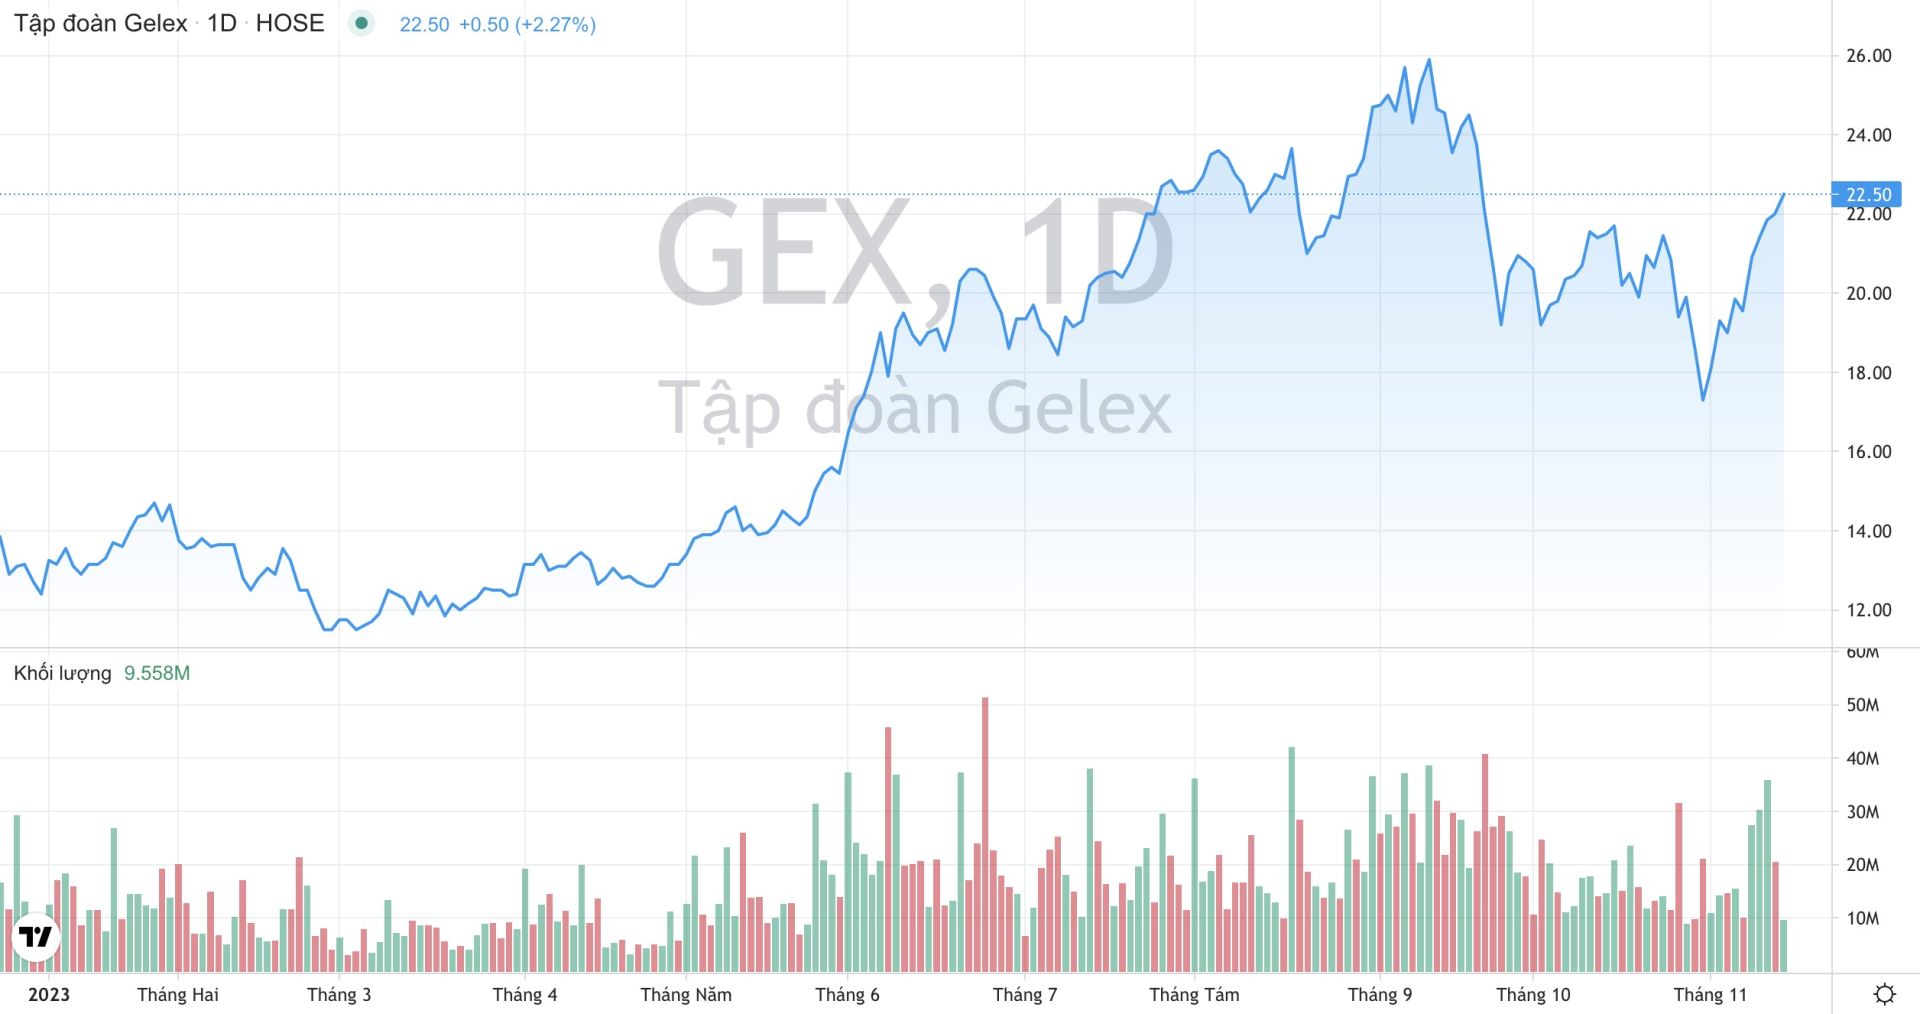 Khối lượng giao dịch và xu hướng giá cổ phiếu GEX của Tập đoàn GELEX từ đầu năm 2023 đến nay. (Nguồn: TradingView)